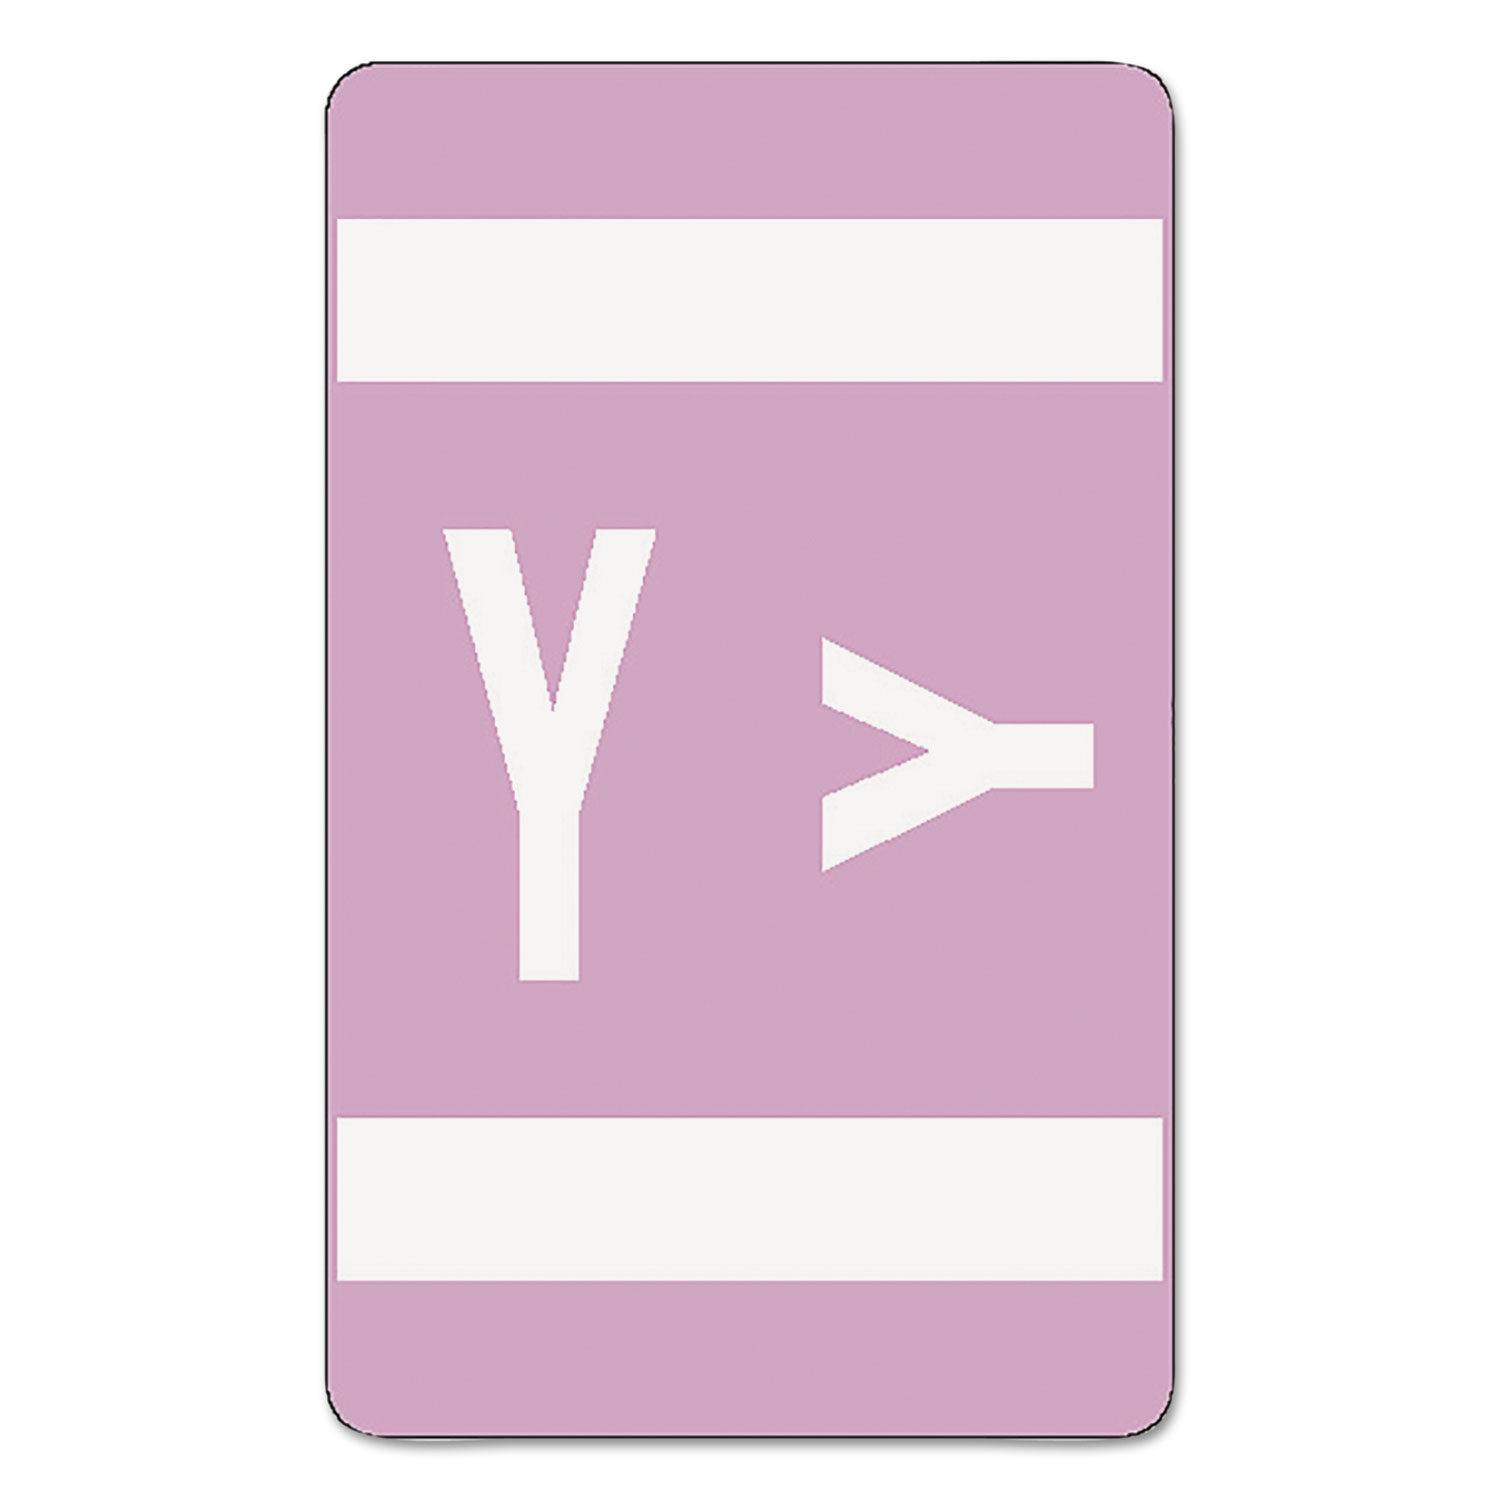 Alpha-Z Color-Coded Second Letter Labels, Letter Y, Lavender, 100/Pack